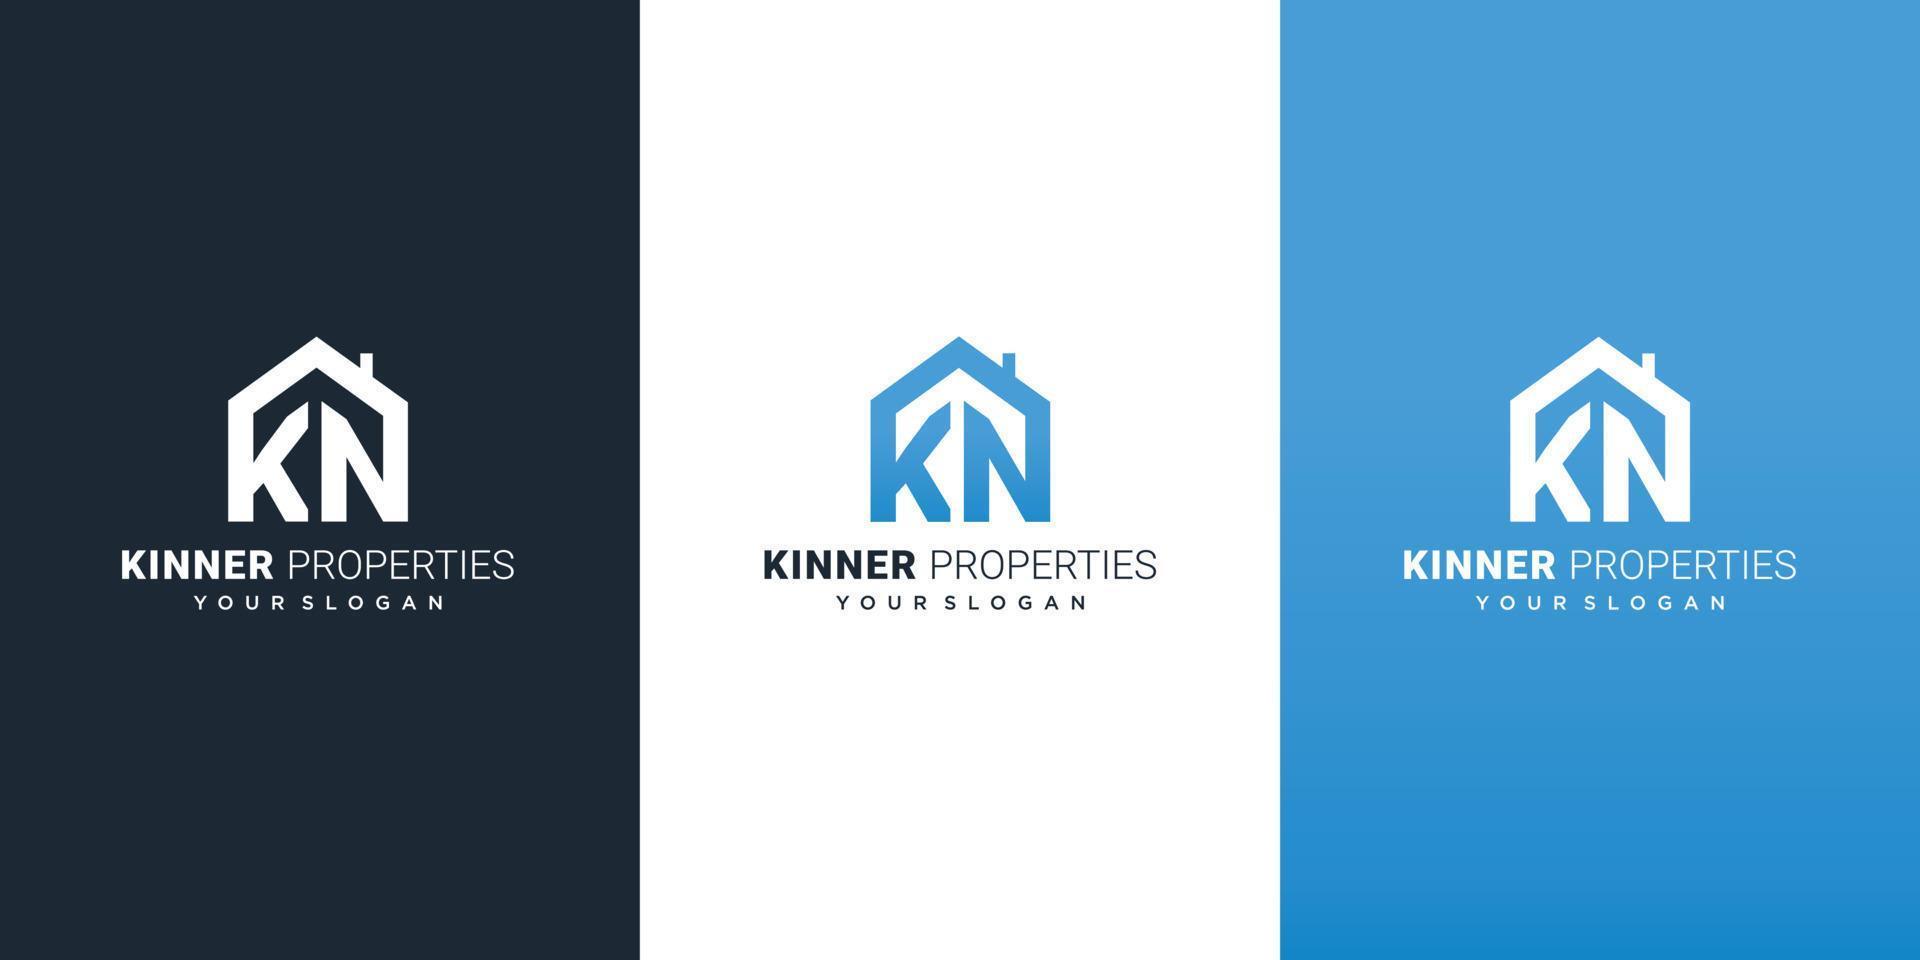 KN Logo design, KN icon, real estate logo design with KN, real estate logo icon with blue white and dark color vector